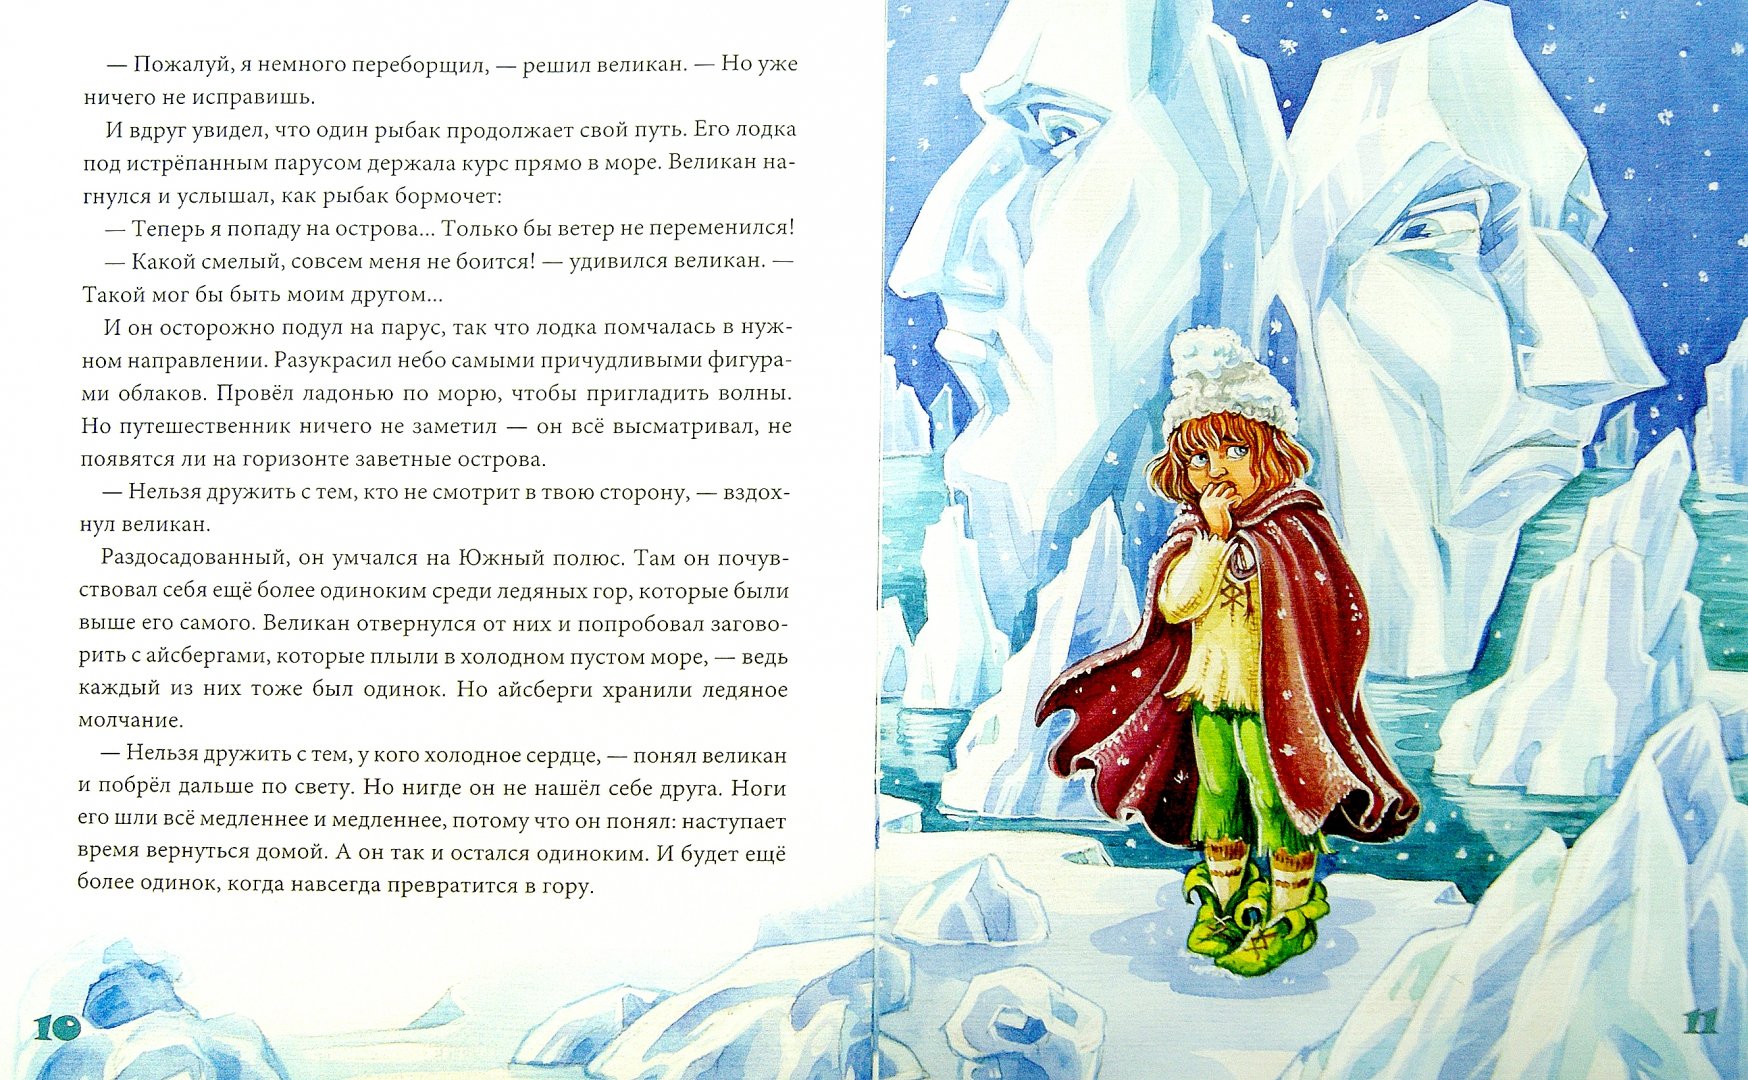 Иллюстрация 1 из 6 для Как великан нашел друга - Екатерина Каликинская | Лабиринт - книги. Источник: Лабиринт